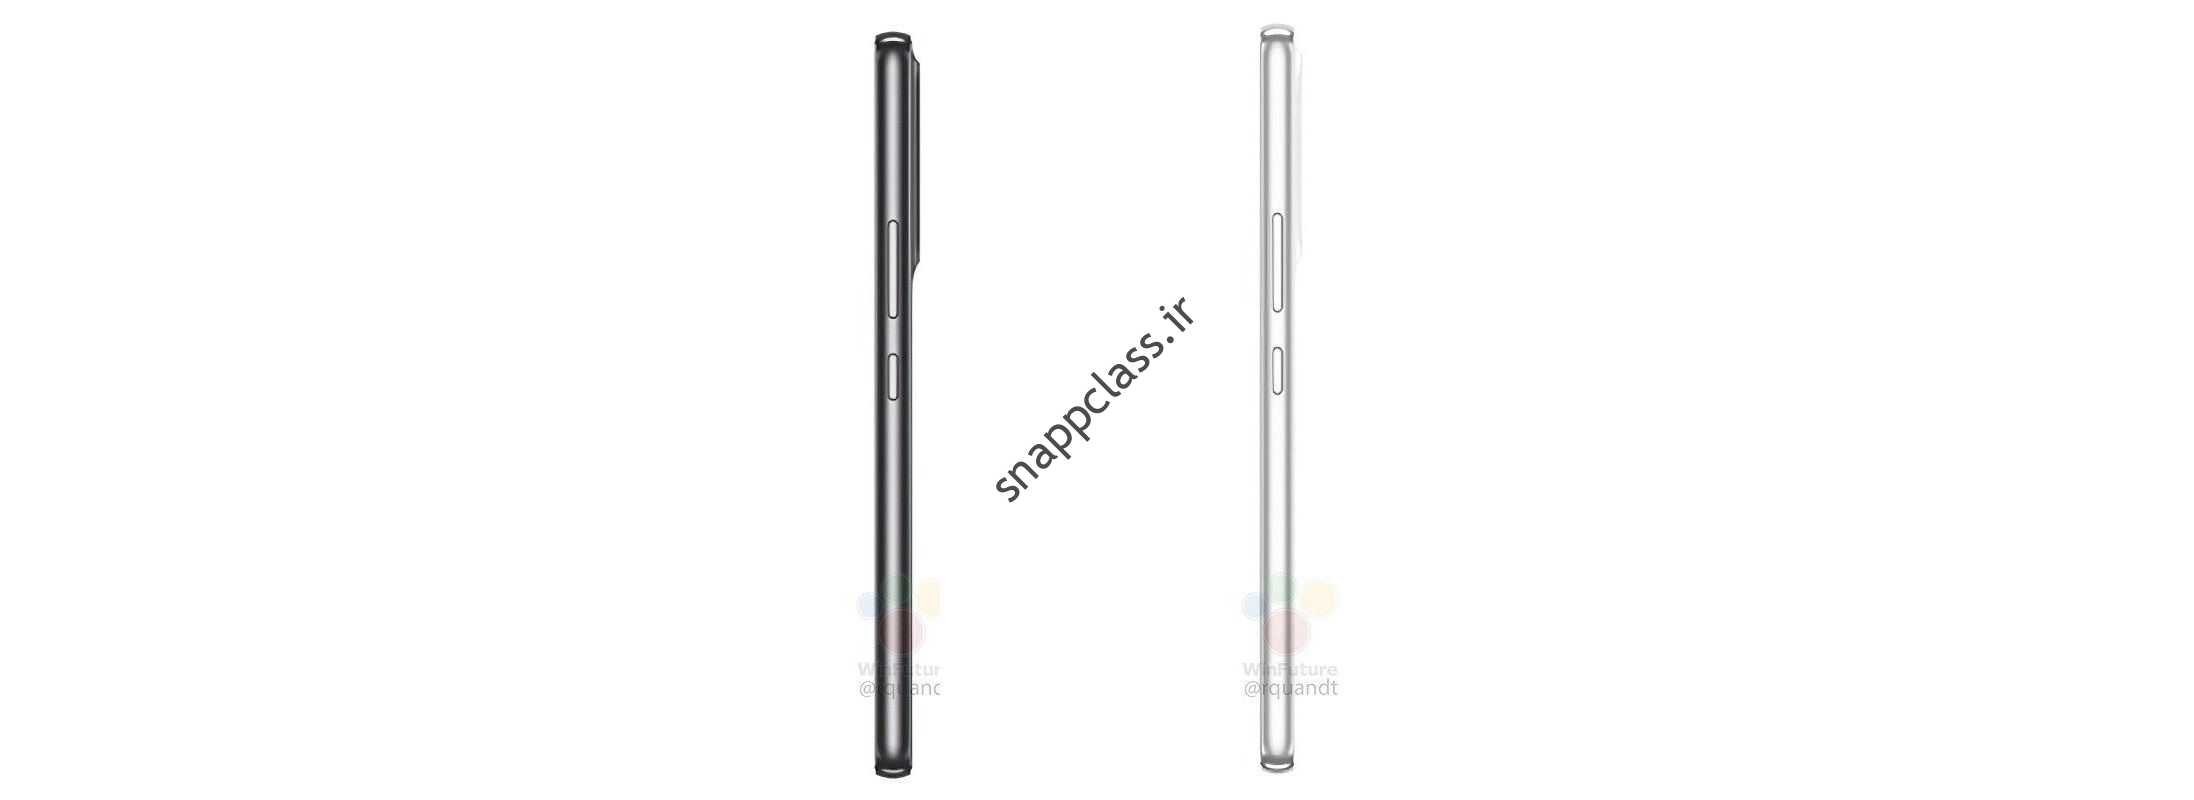 Samsung Galaxy A53 53 نمای جانبی رندر غیر رسمی سفید و مشکی